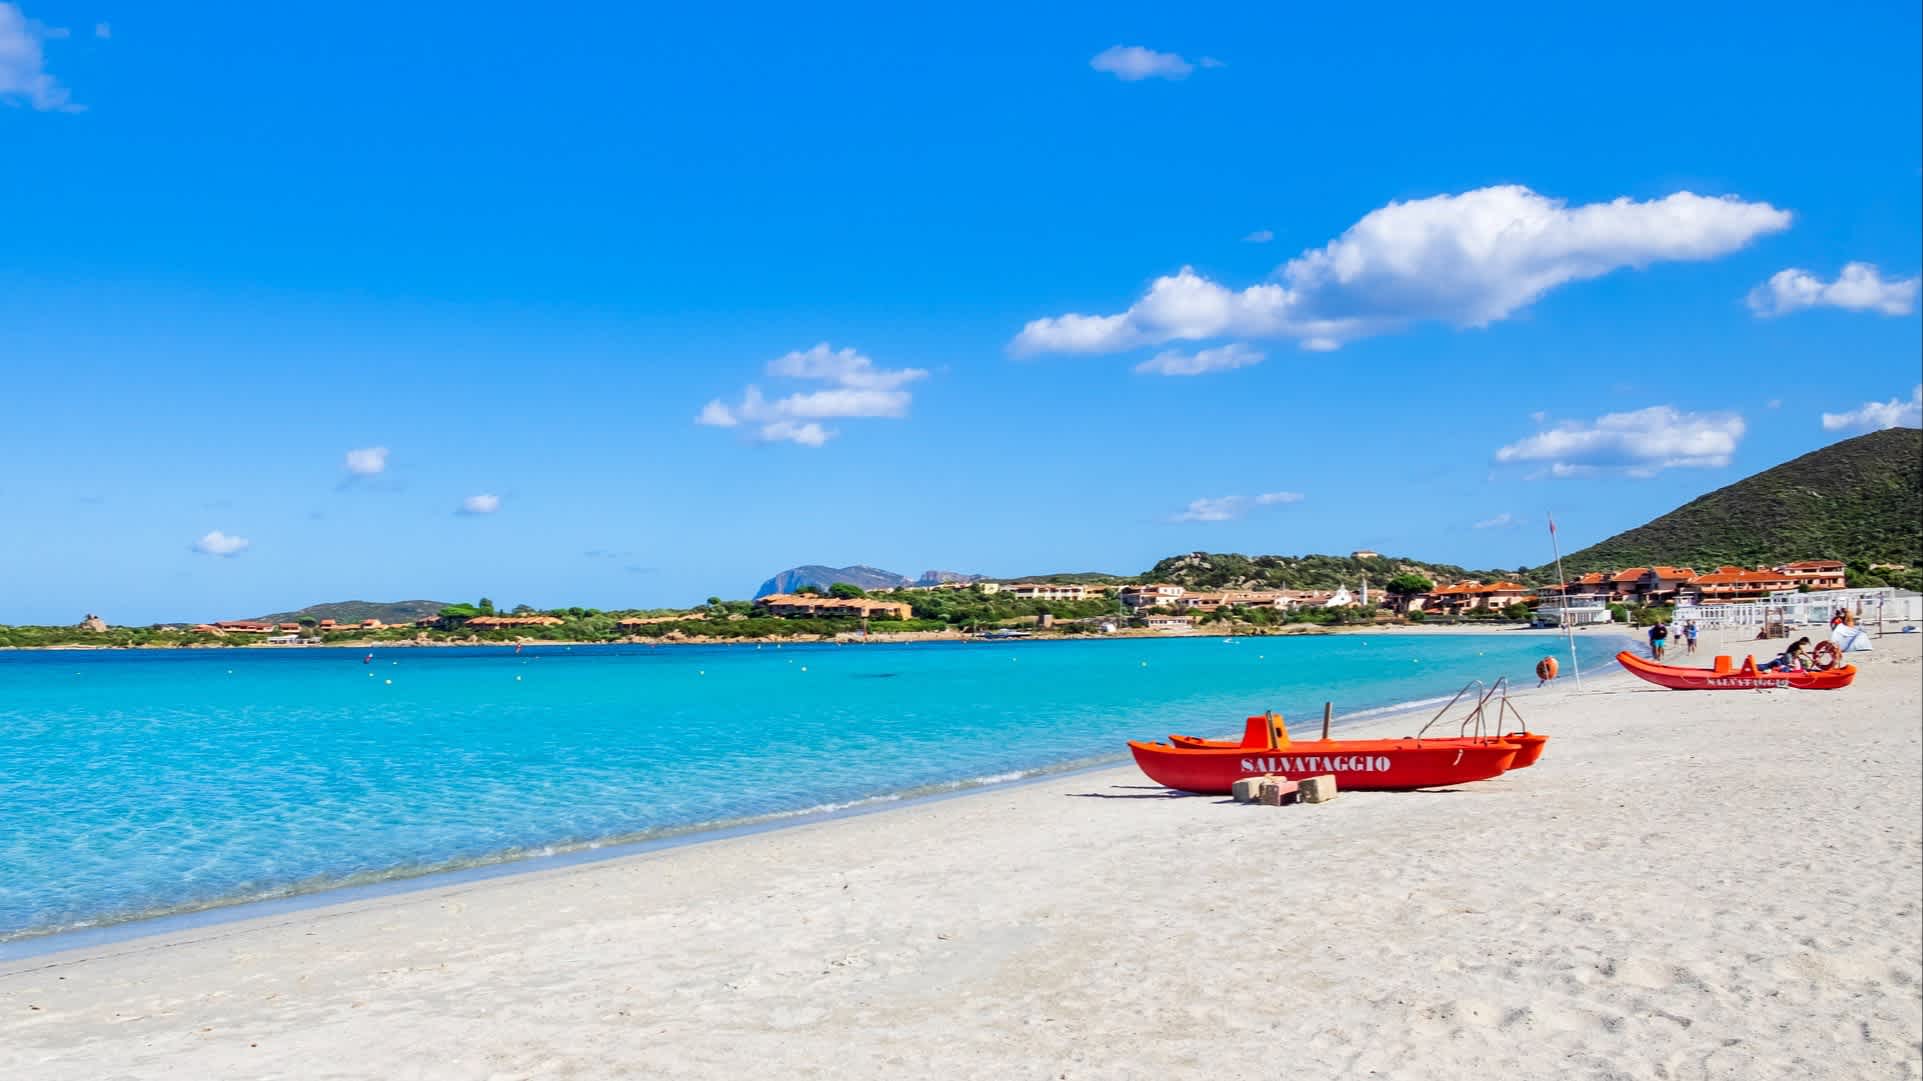 Bateaux rouges sur le sable blanc de la plage de Marinella en Gallura, en Sardaigne, en Italie.